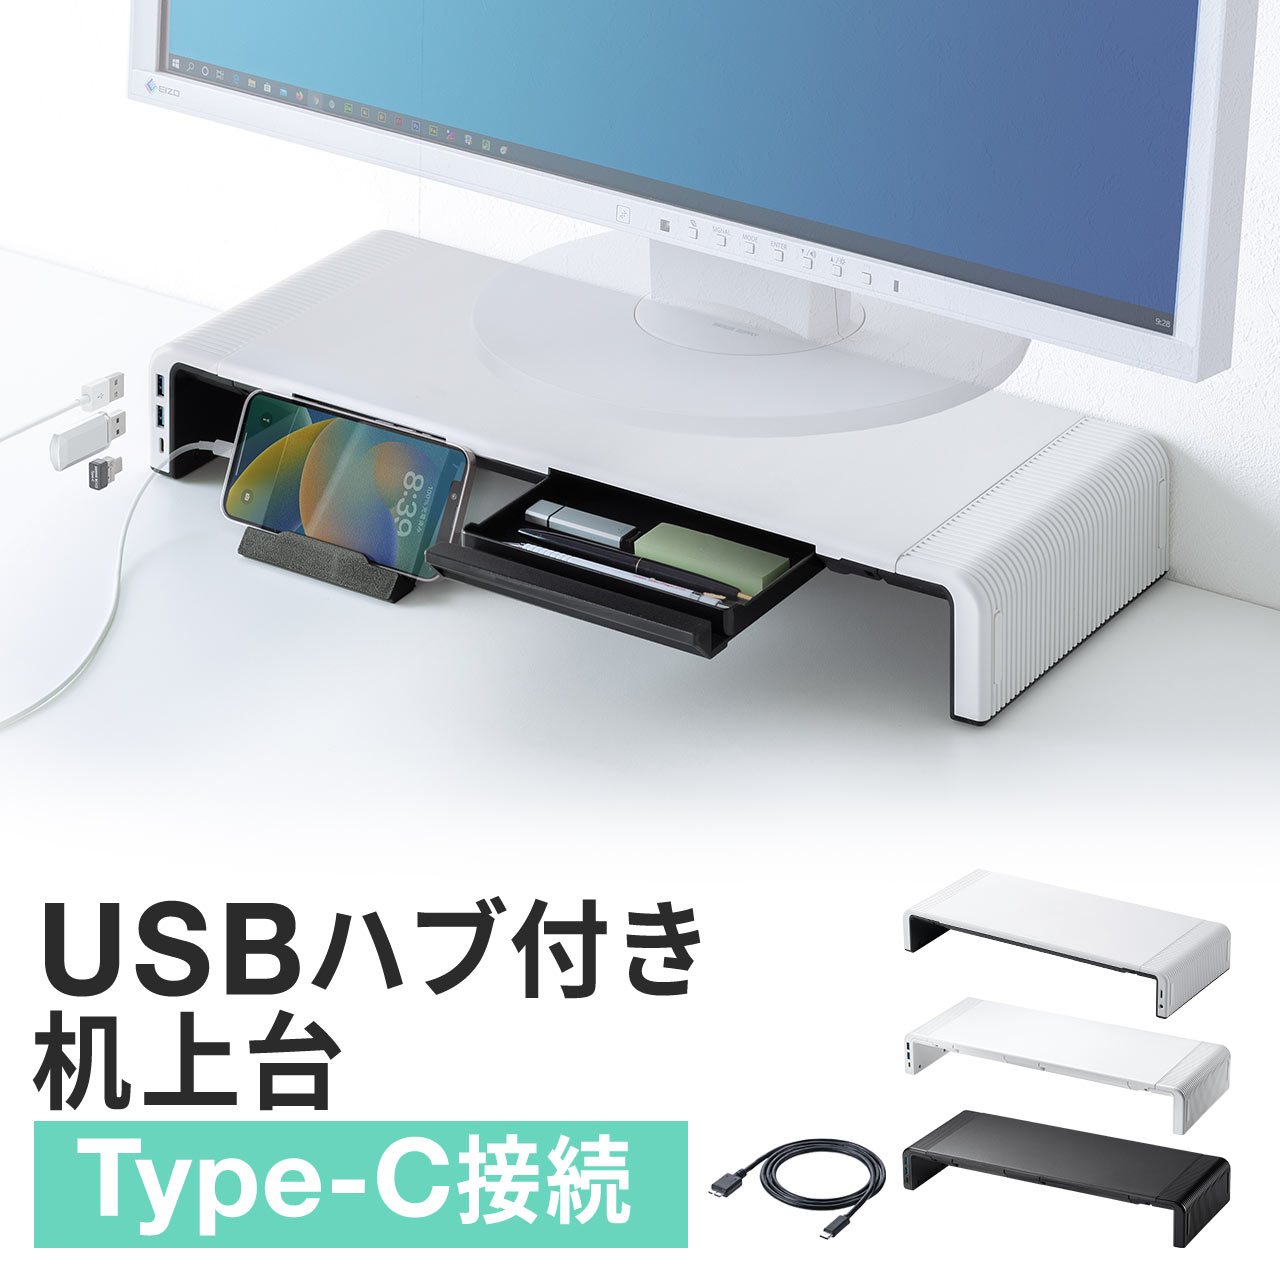 モニター台 USBポート Type-Cポート 机上台 机上ラック 引き出し付き キーボード収納 USBハブ付き 幅調整 Type-C接続 パソコン台 100-MR188BW